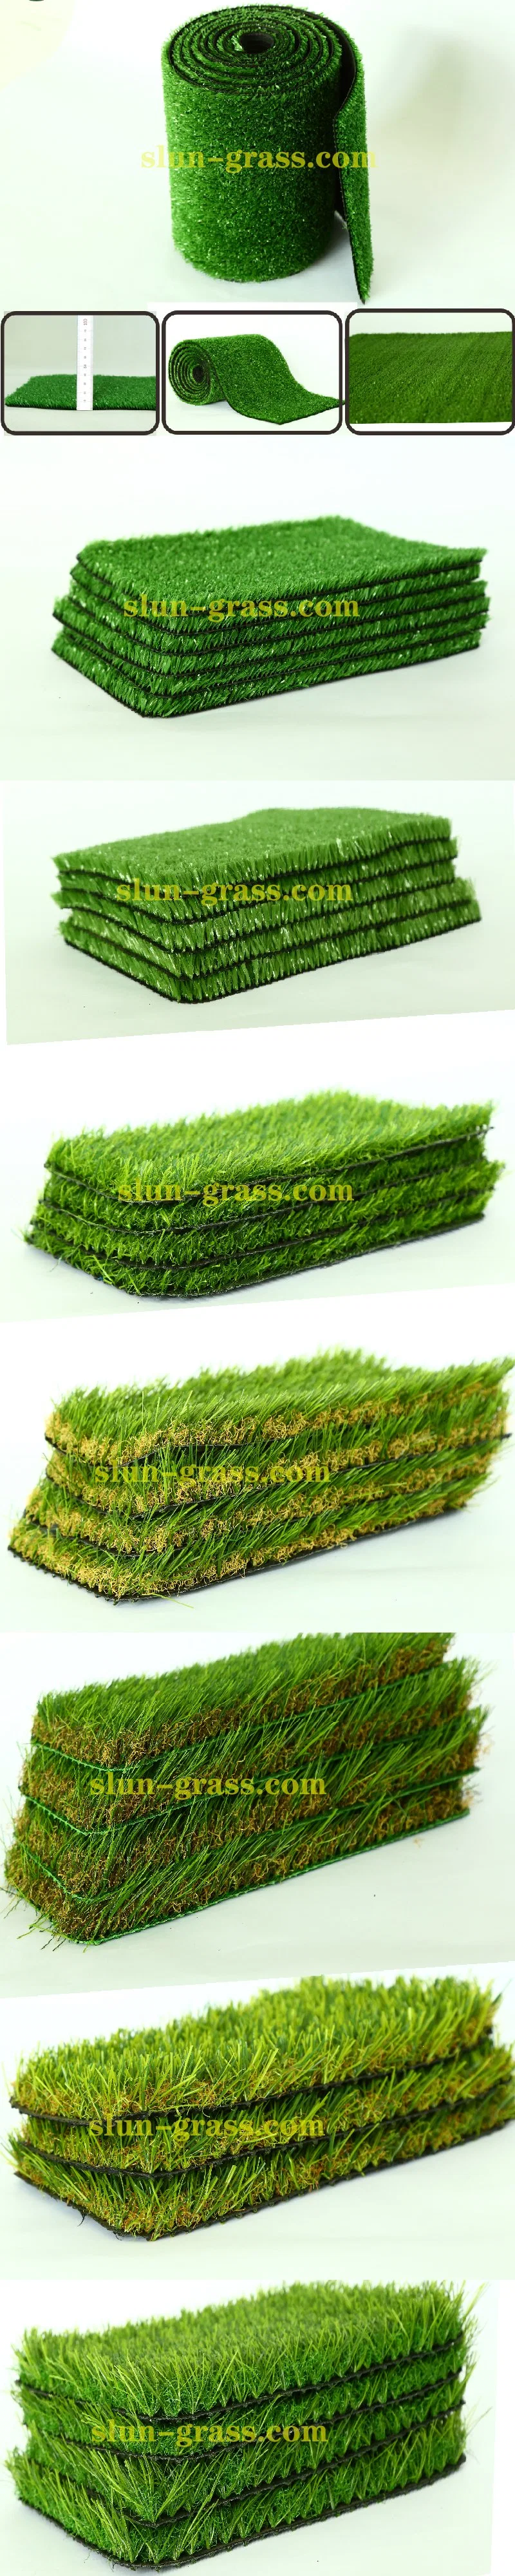 High Density Putting Green Golf Matturf Garden Natural Green Long Artificial Grass Plant Rug Car Mat for Car Floor